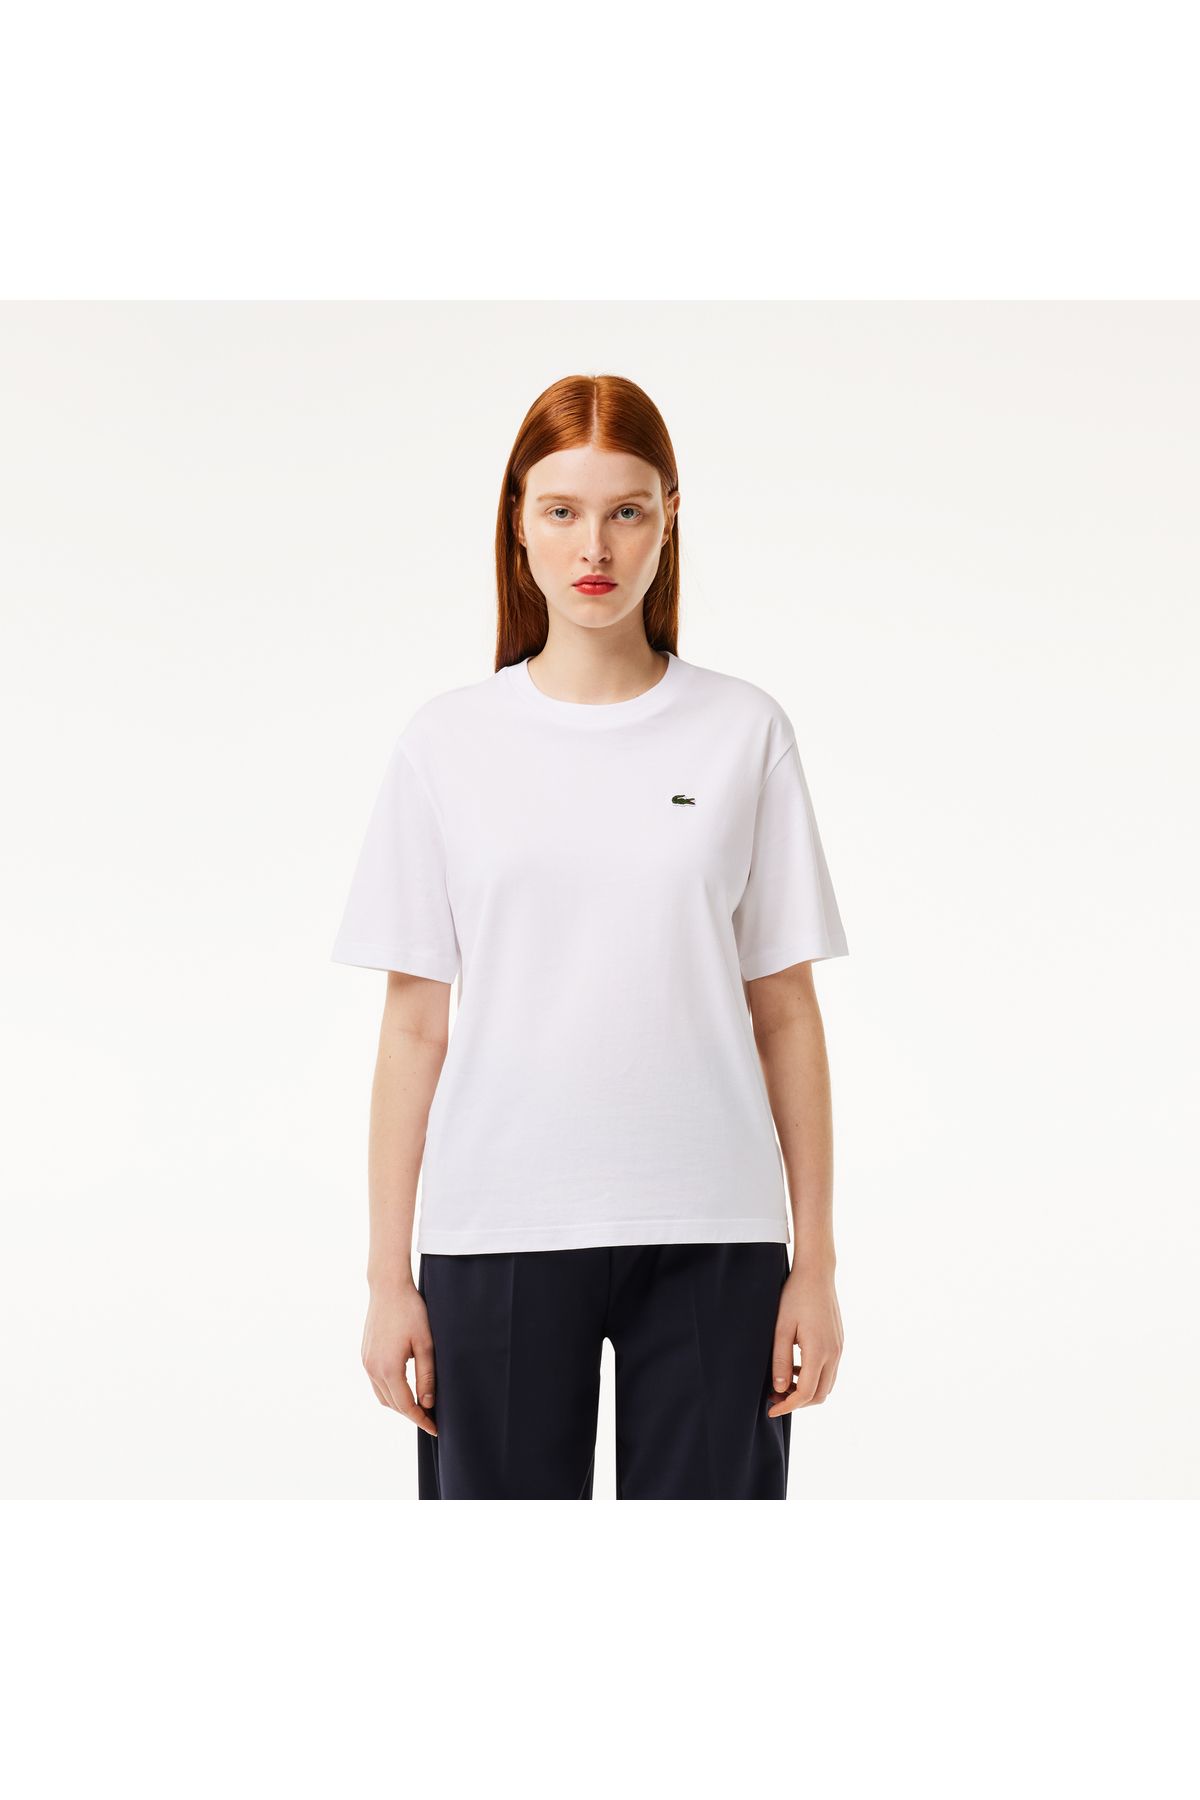 Lacoste Kadın Bisiklet Yaka Beyaz T-shirt